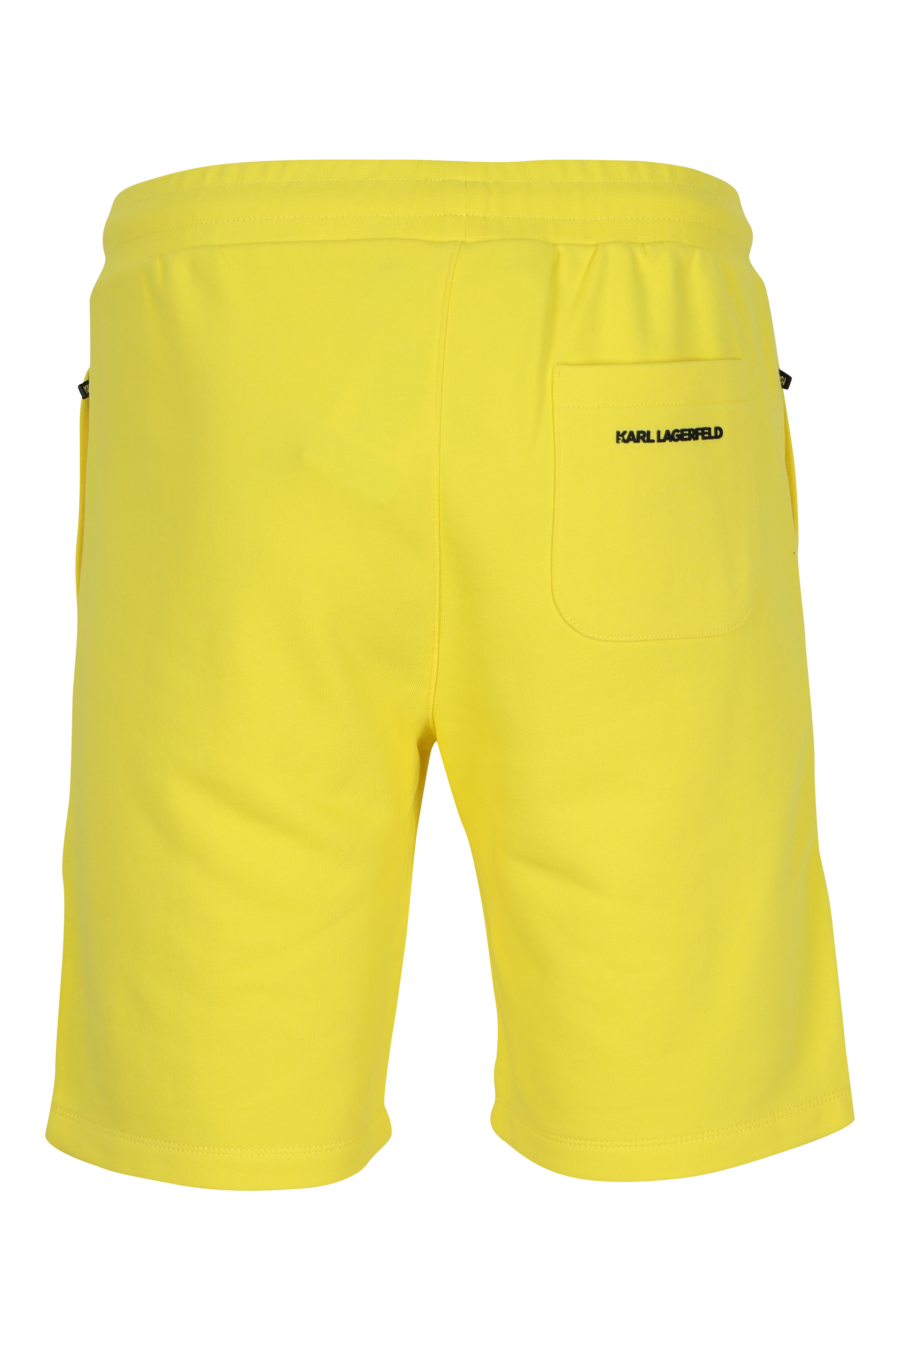 Pantalón de chándal amarillo midi con minilogo "karl" en goma - 4062226932868 1